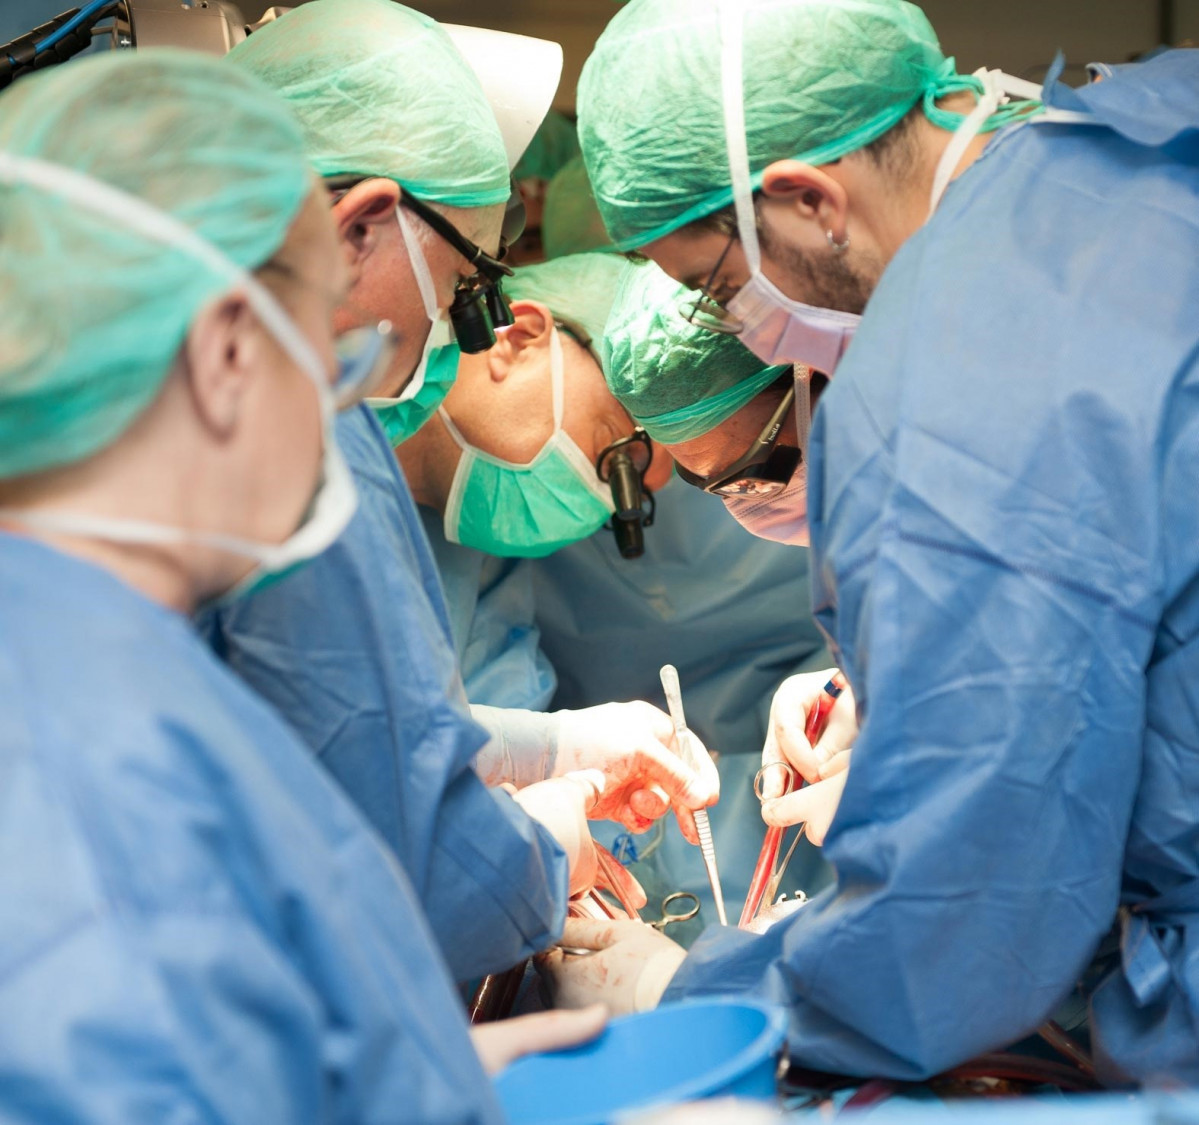 AV.- El Hospital de Bellvitge implanta un corazón artificial total, el segundo con éxito en España